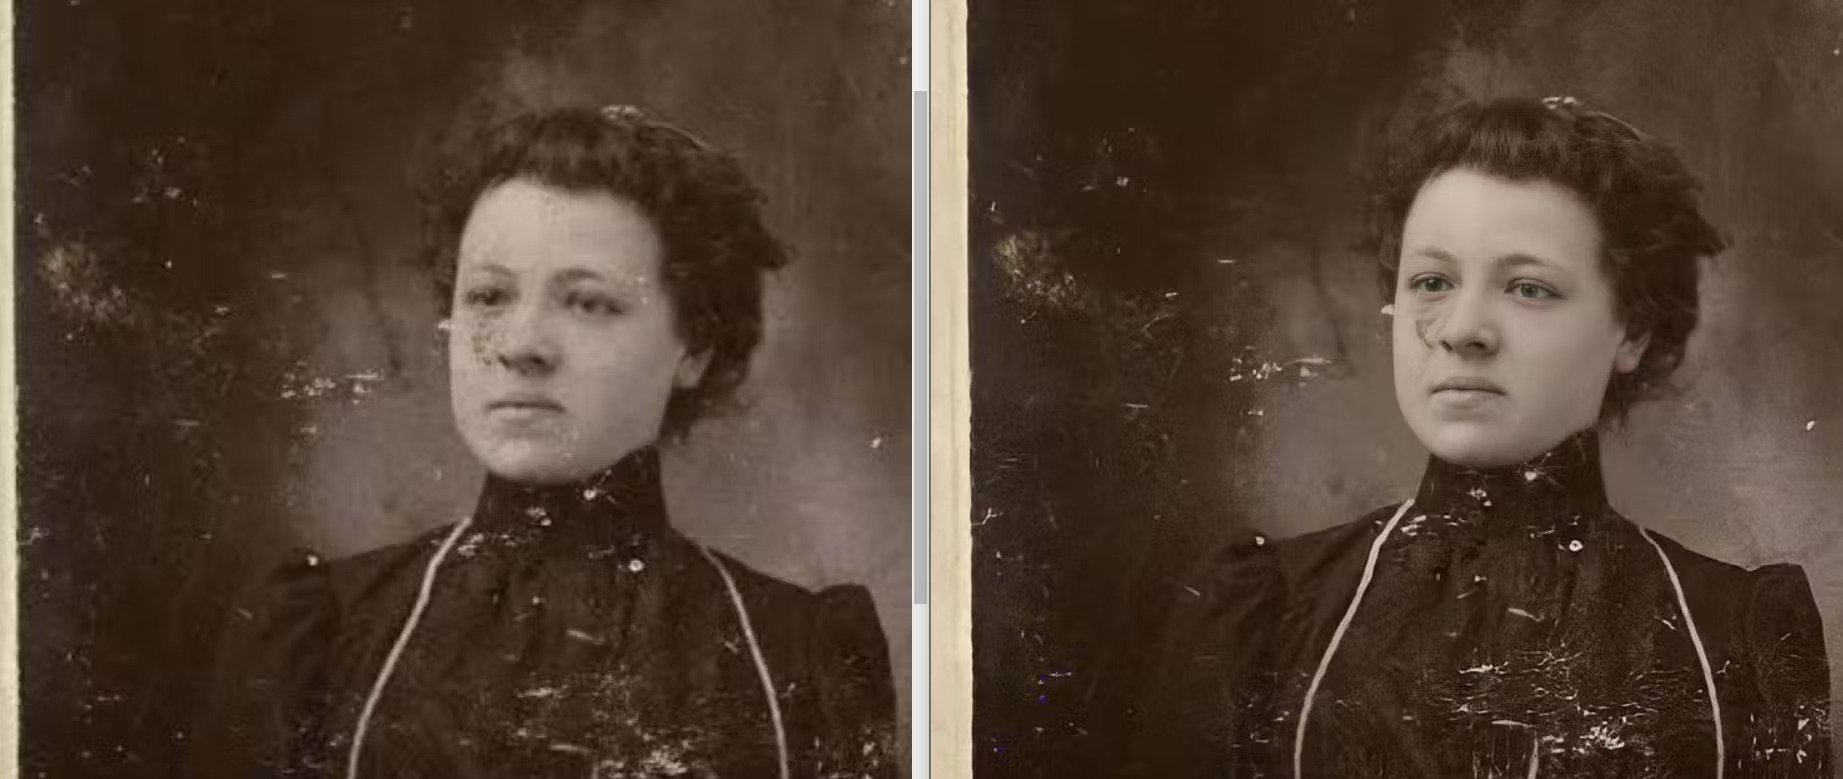 una imagen de una mujer borrosa a la izquierda, la misma imagen pero nítida a la derecha